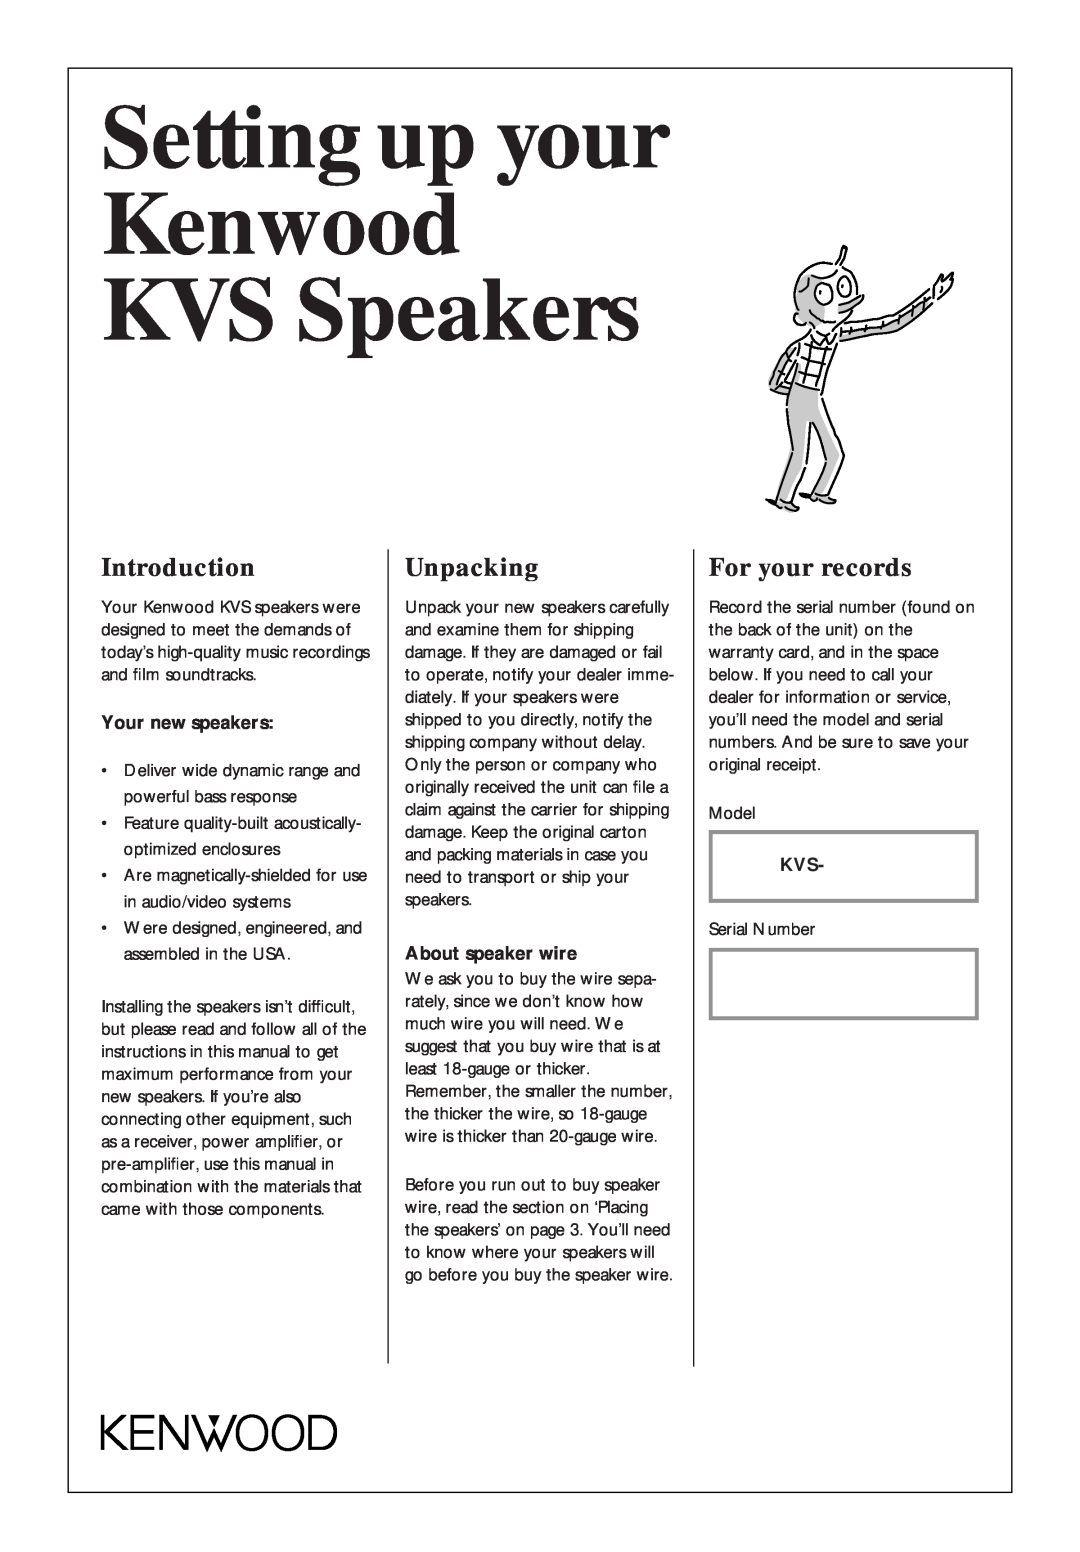 Kenwood KVS-200, KVS-400, KVS-300 warranty Setting up your Kenwood KVS Speakers, Introduction, Unpacking, For your records 